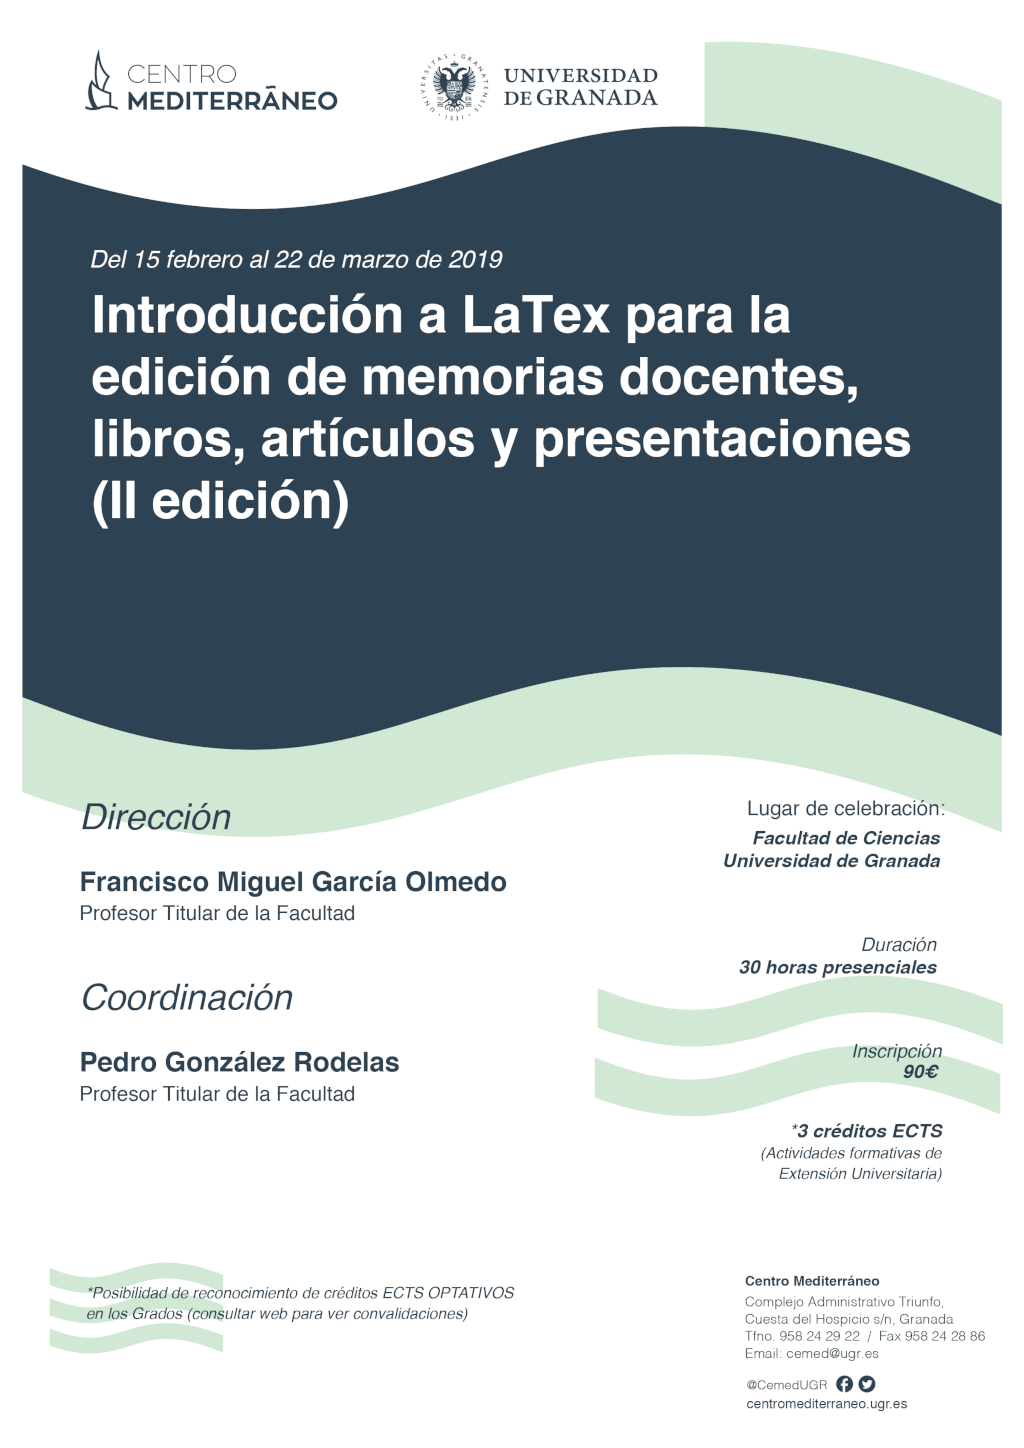 Introducción a LaTeX para la edición de memorias docentes, libros, artículos y presentaciones (II edición)